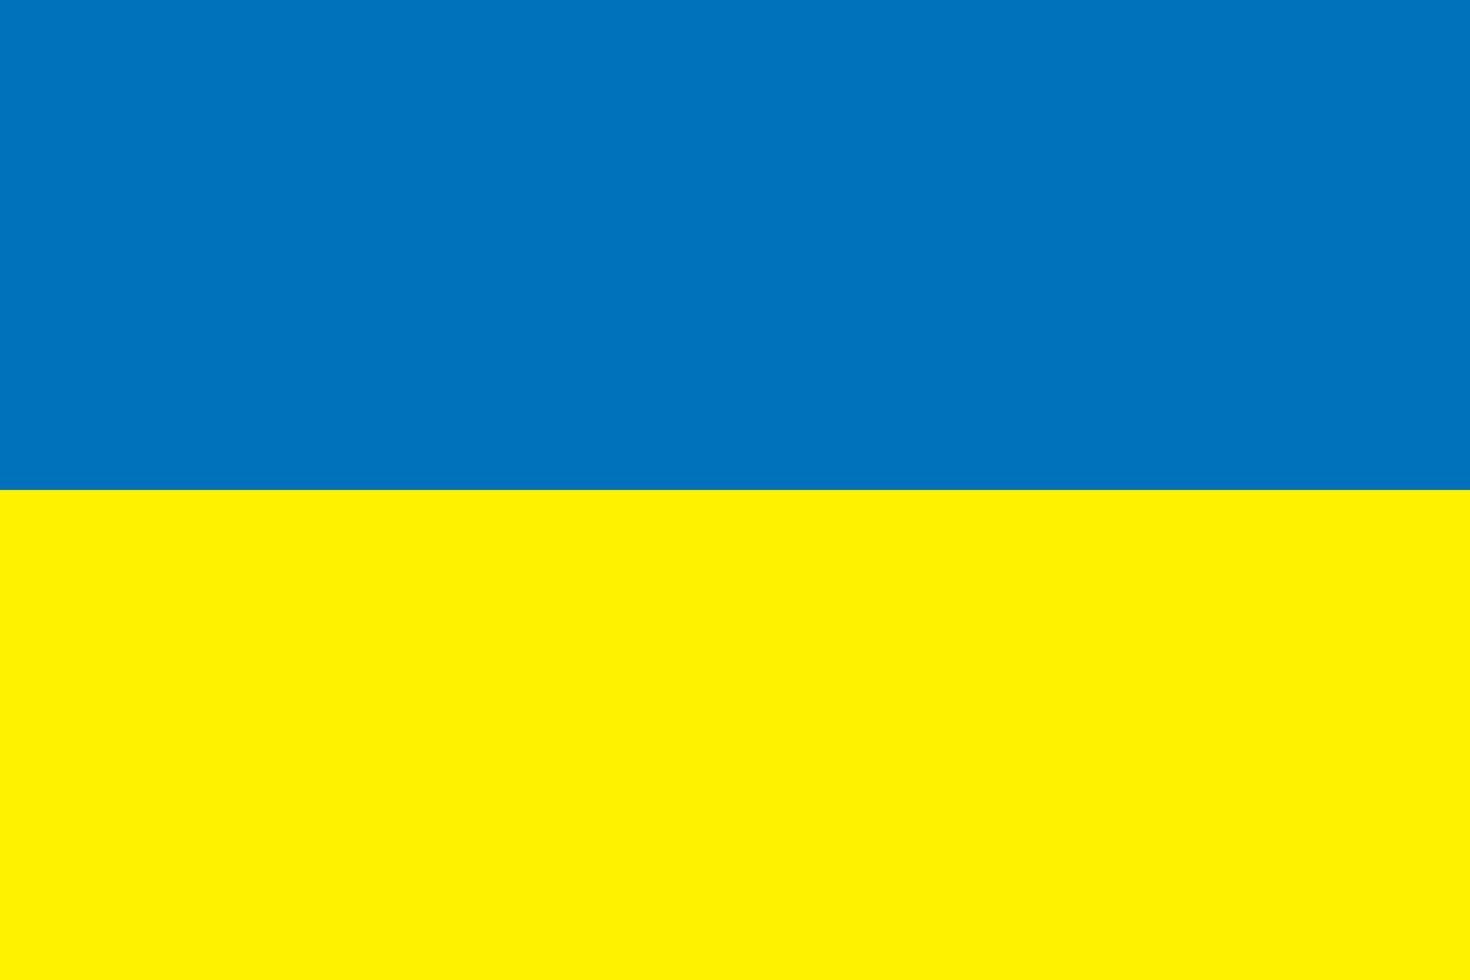 abstrakt blå och gul färg bakgrund, som ukrainska flaggan. vektor illustration.